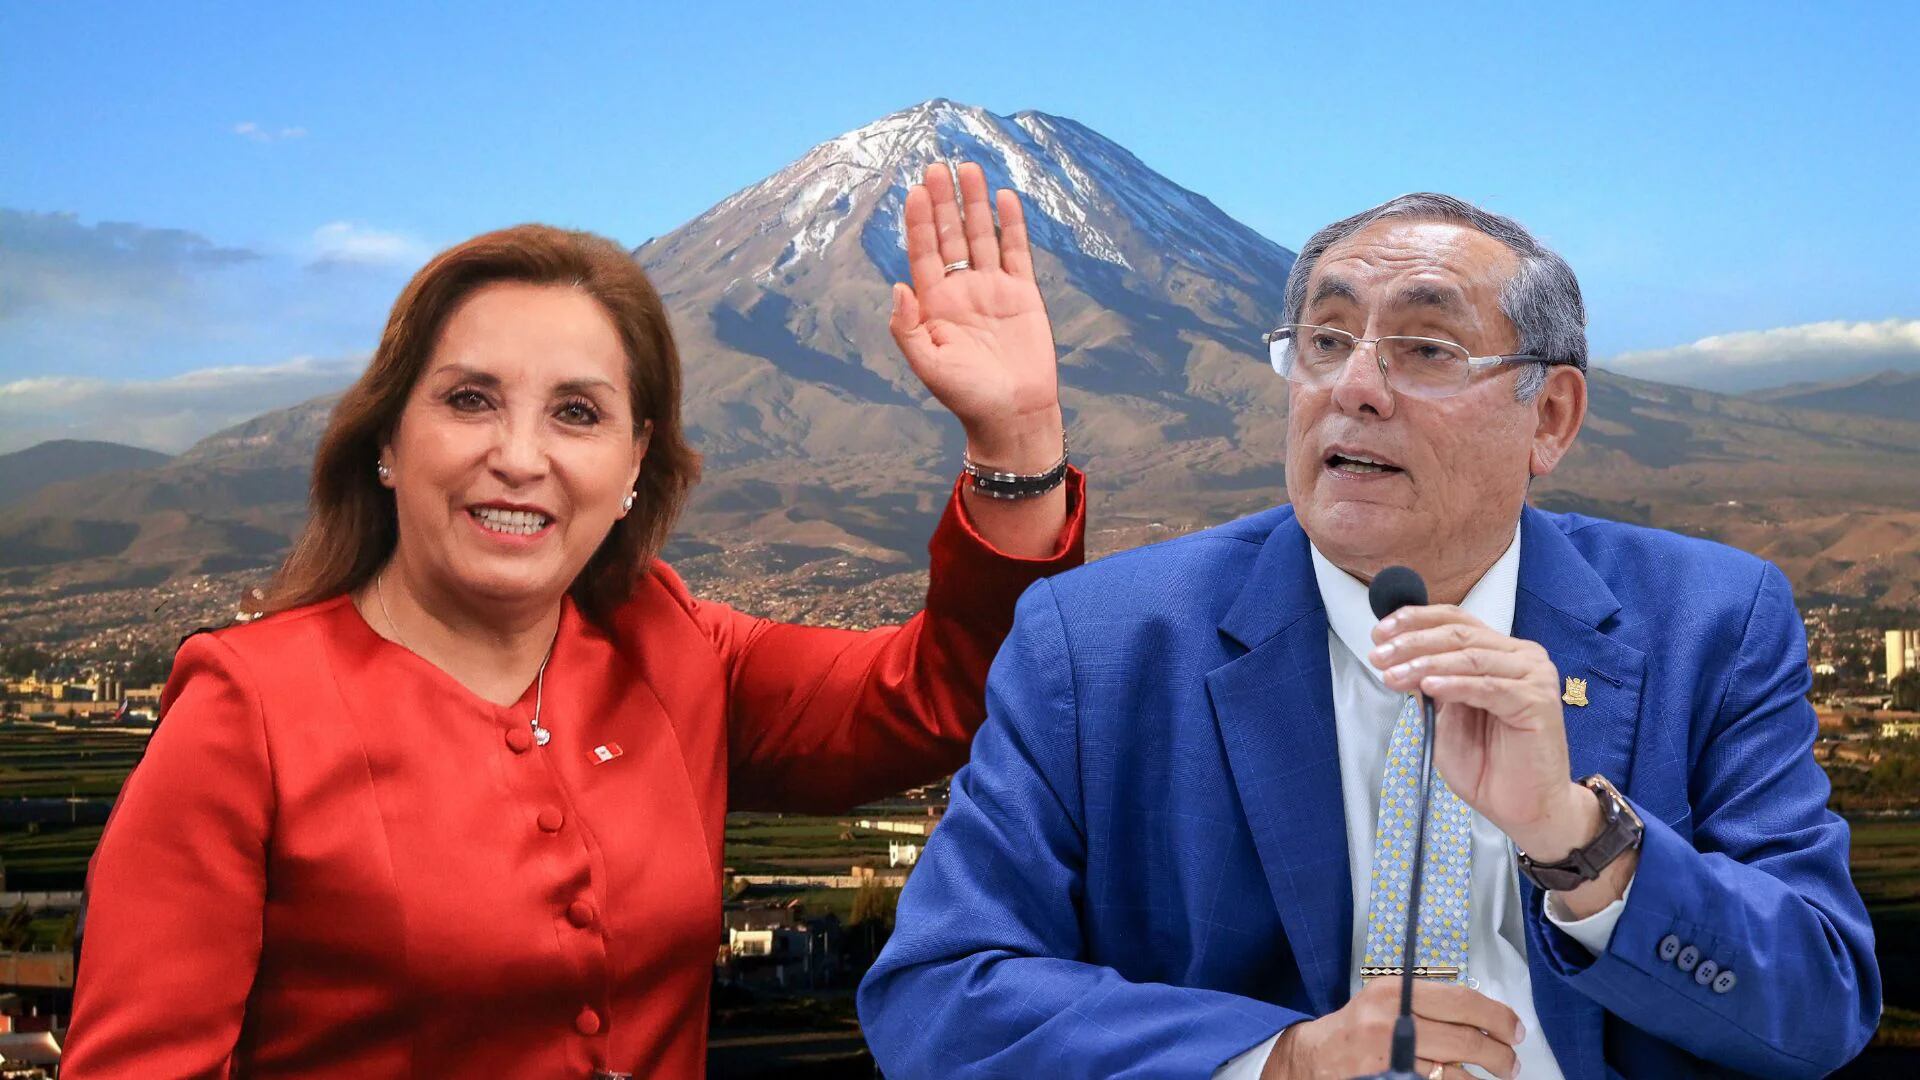 Ejecutivo reactiva debate de Tía María.| Infobae Perú / Camila Calderón